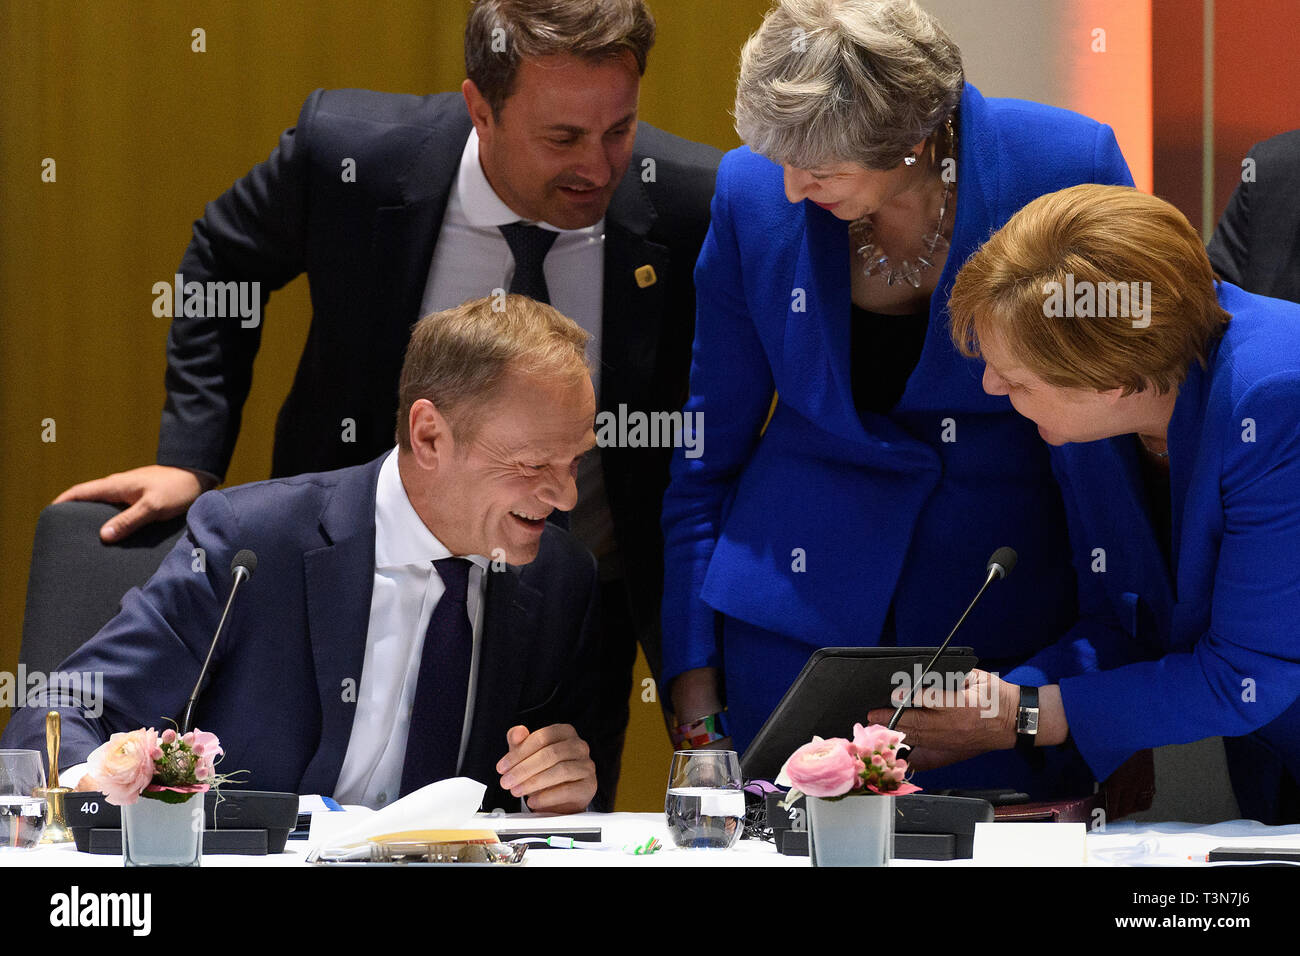 Brüssel, Belgien - 10 April: (L-R) Präsidenten des Europäischen Rates, Donald Tusk, der britische Premierminister Theresa May und die deutsche Bundeskanzlerin Angela Merkel sprechen zu einem Runden Tisch am 10. April 2019 in Brüssel, Belgien. Theresa können offiziell präsentiert ihr Fall in die Europäische Union für eine kurze Verzögerung Brexit bis zum 30. Juni 2019. Die anderen Staats- und Regierungschefs der EU werden dann besprechen dann, wie bei einem Abendessen ohne sie zu reagieren. (Foto von Leon Neal - Pool/Getty Images) Stockfoto